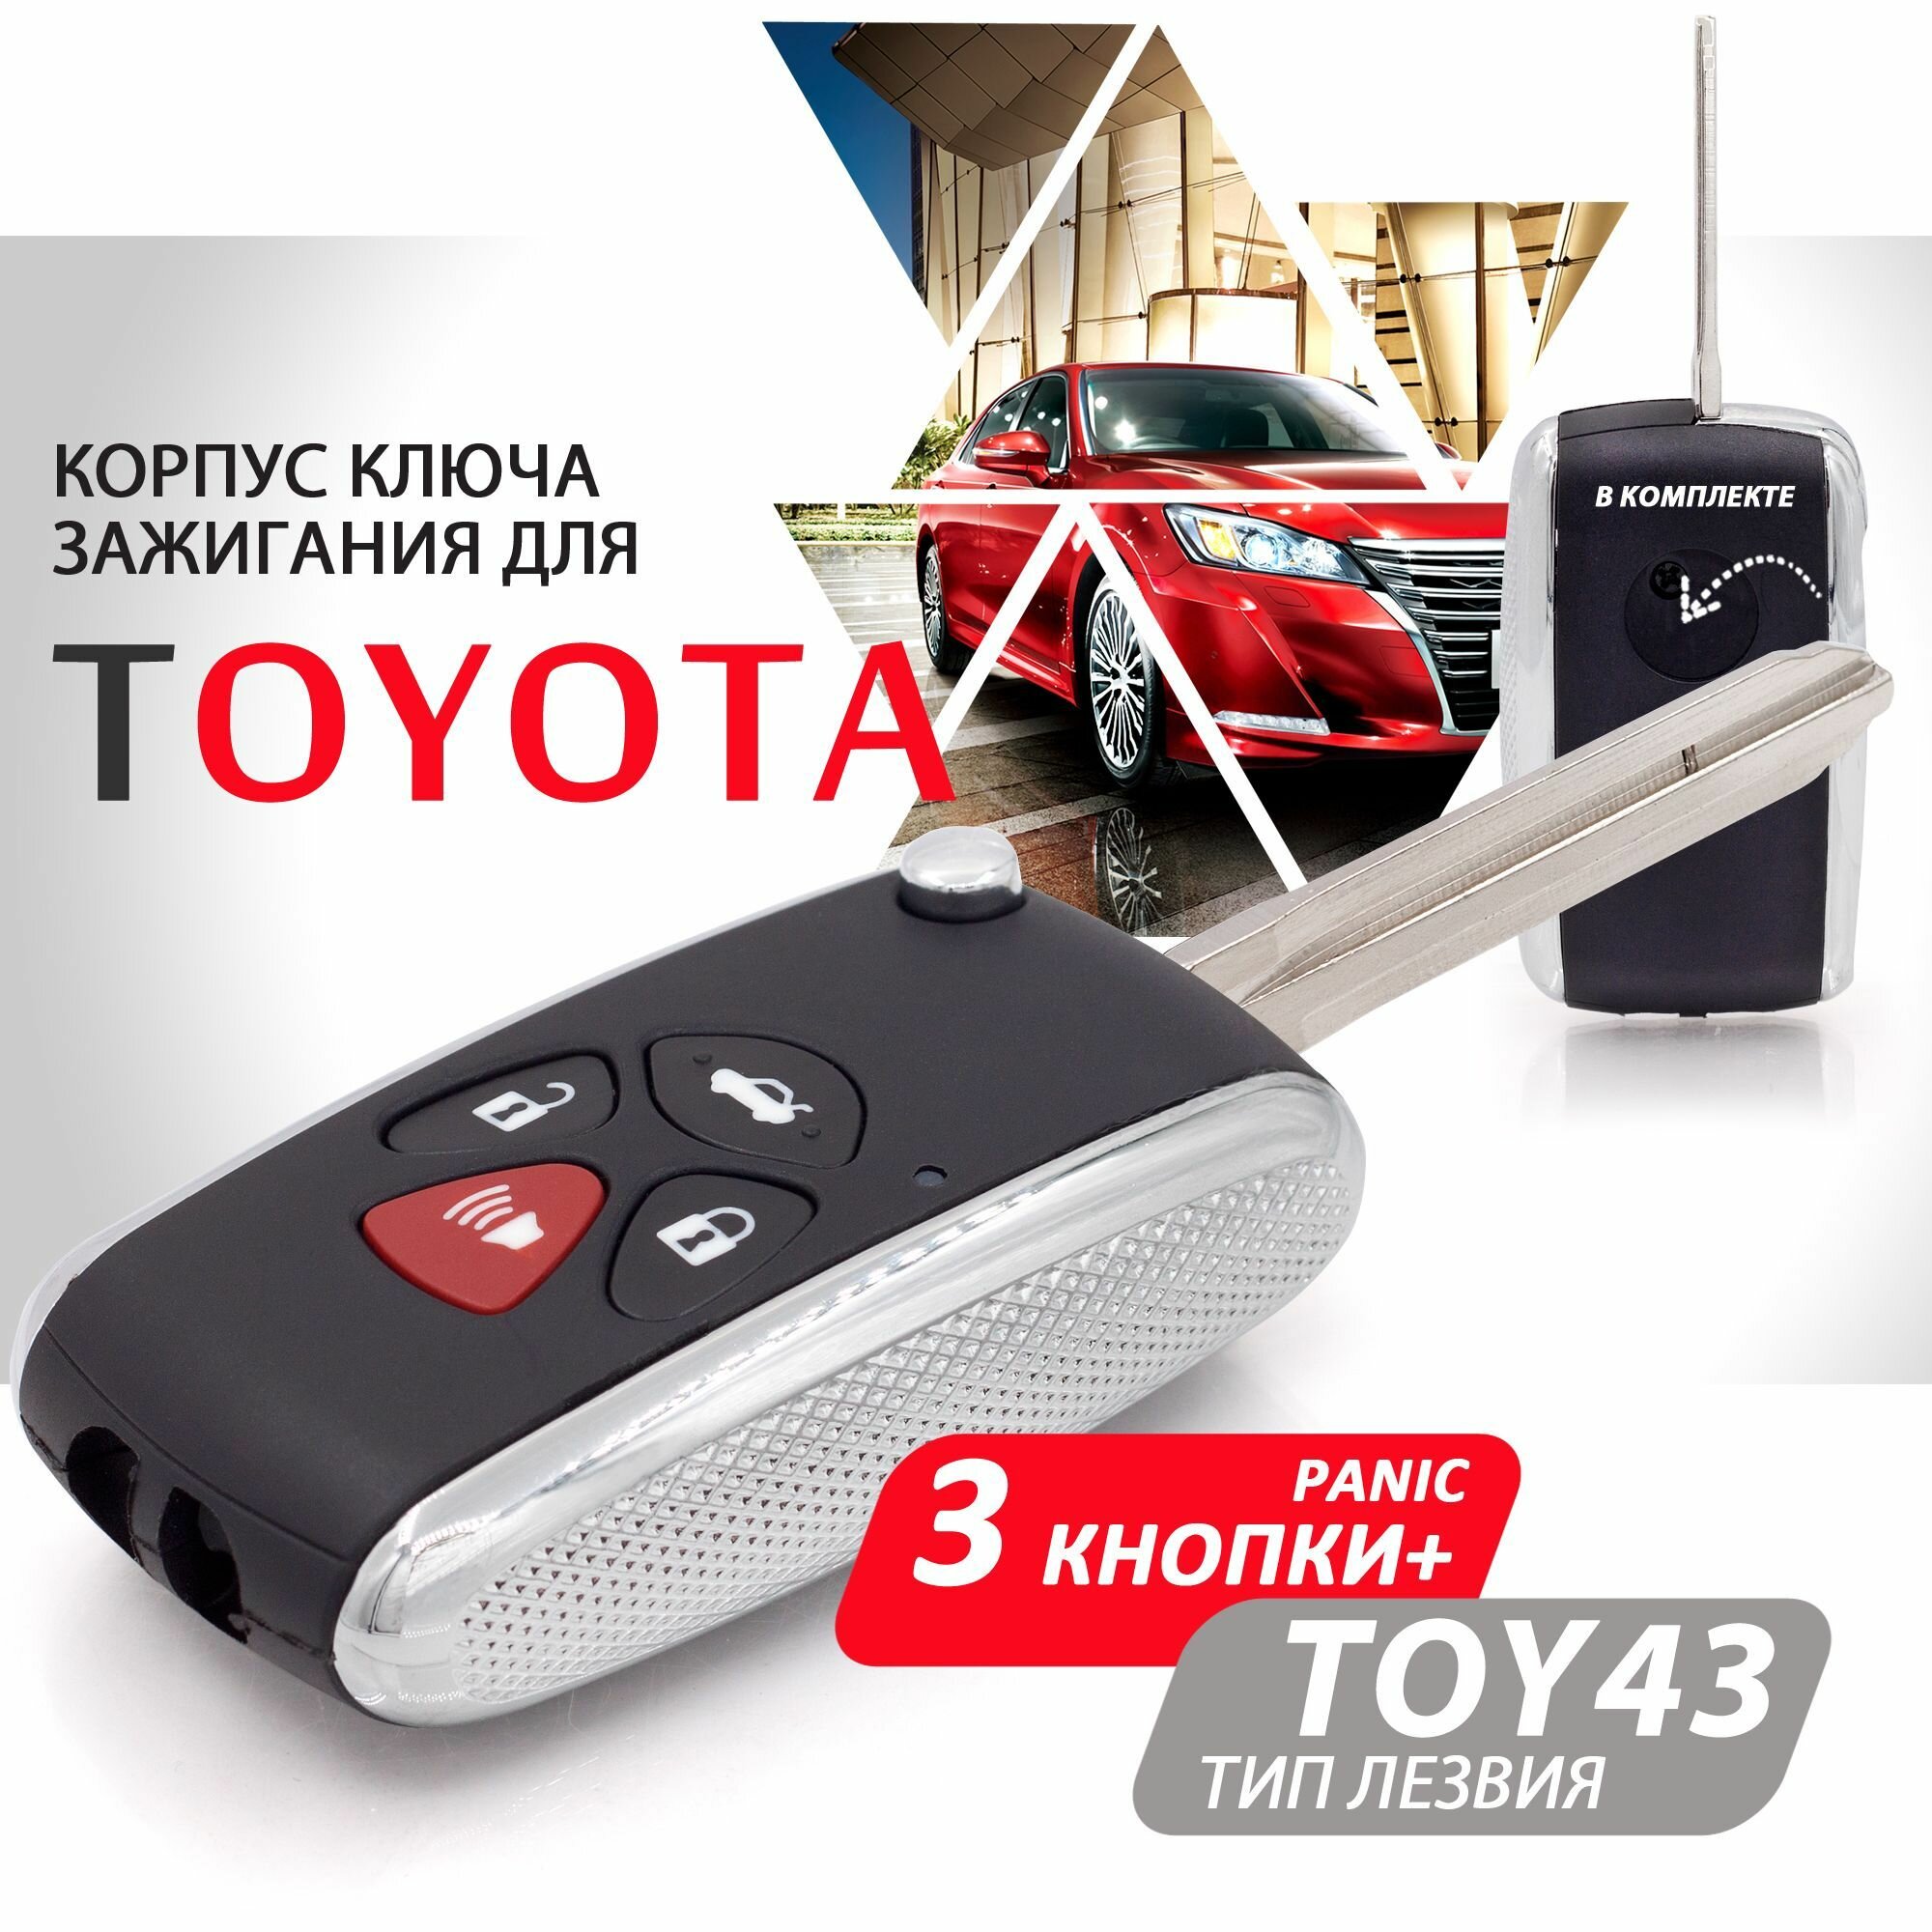 Корпус ключа зажигания для Toyota Camry RAV4 Corolla - 3 кнопки + Panic выкидное лезвие TOY43 / Брелок для автомобиля Тойота Камри РАВ4 Королла